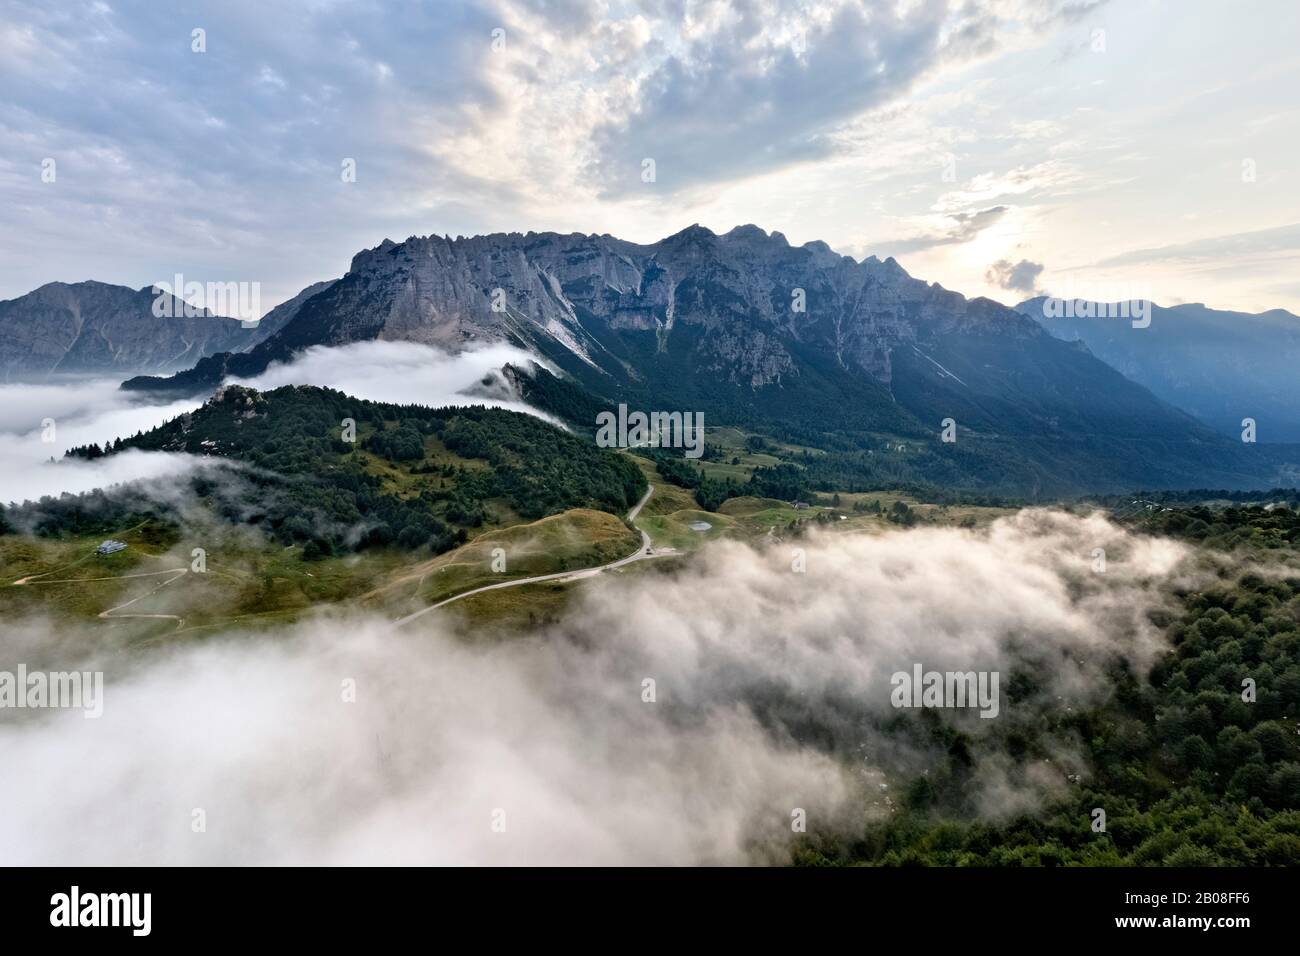 Piccole Dolomiti : la chaîne de montagne de Carega et sous le col de Campogrosso. Vallarsa, Province De Trente, Trentin-Haut-Adige, Italie, Europe. Banque D'Images